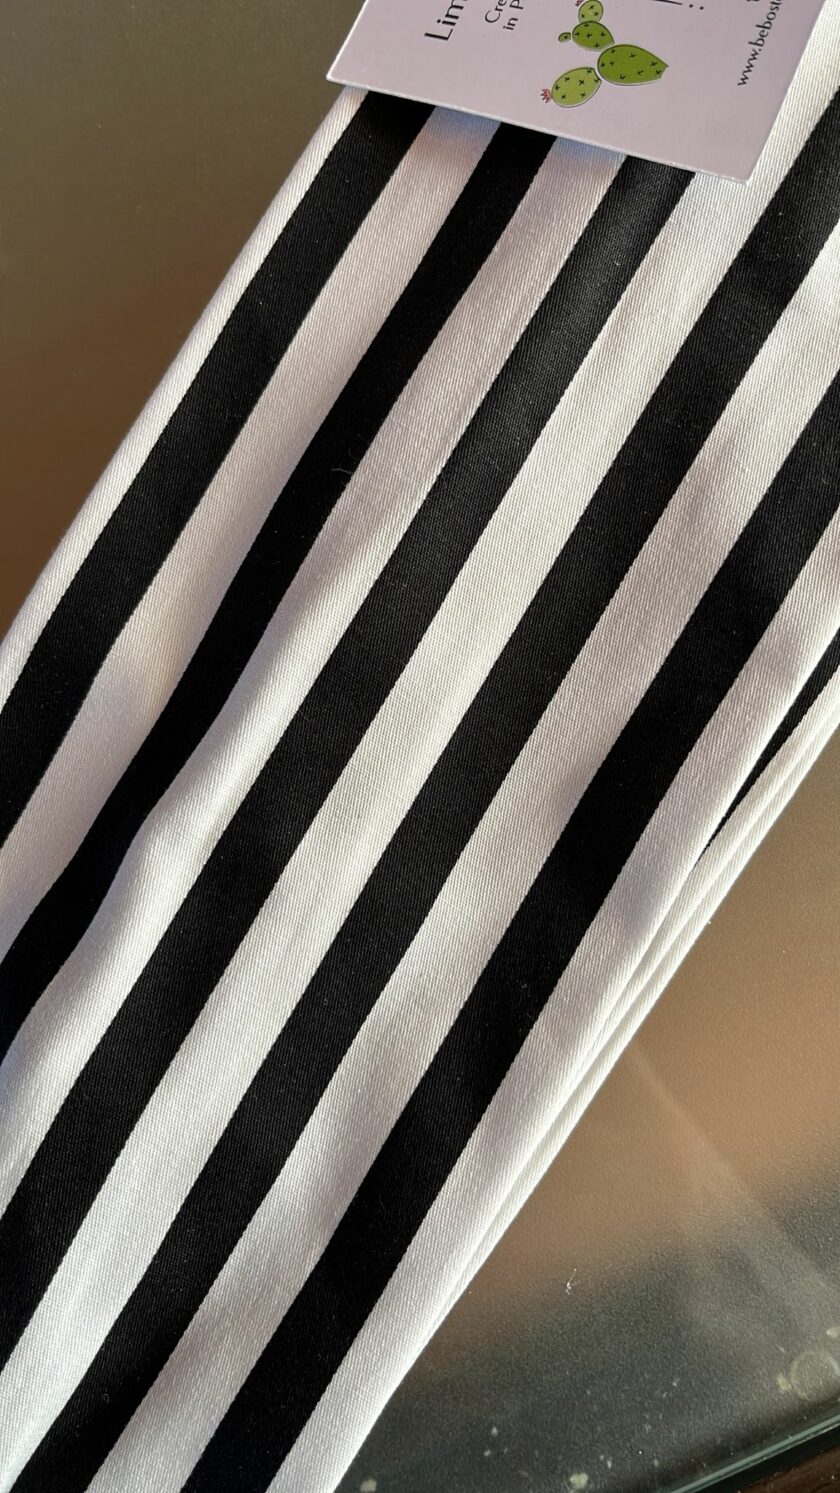 Fascia modellabile righe black and white